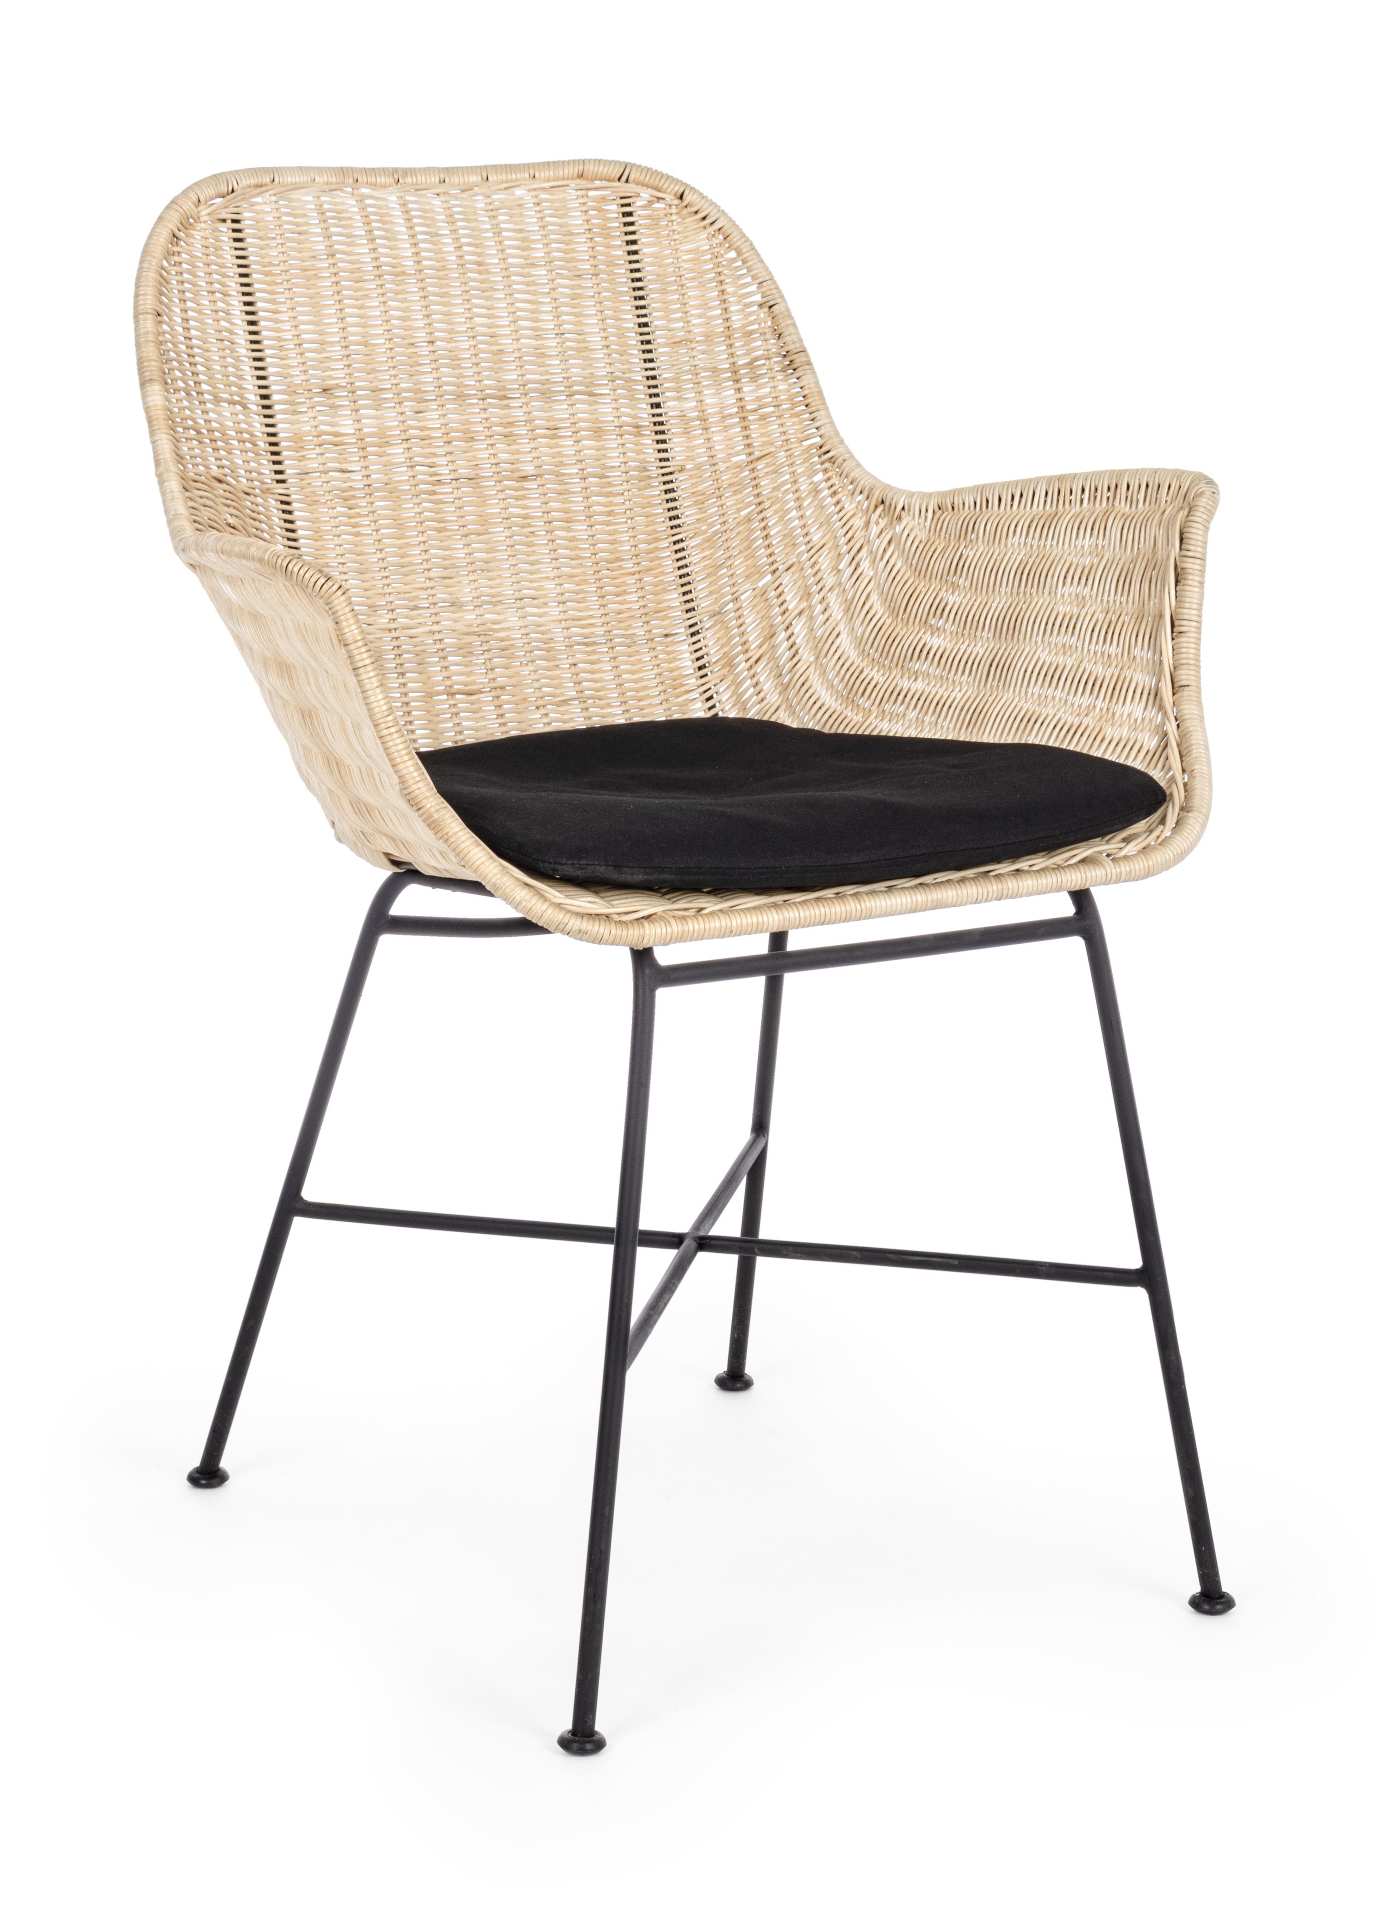 Der Stuhl Atica überzeugt mit seinem modernen Design. Gefertigt wurde der Stuhl aus einem Binsengeflecht, welches einen natürlichen Farbton besitzt. Das Gestell ist aus Metall und ist Schwarz. Der Stuhl wird inklusive Sitzkissen in der Farbe passend zum G